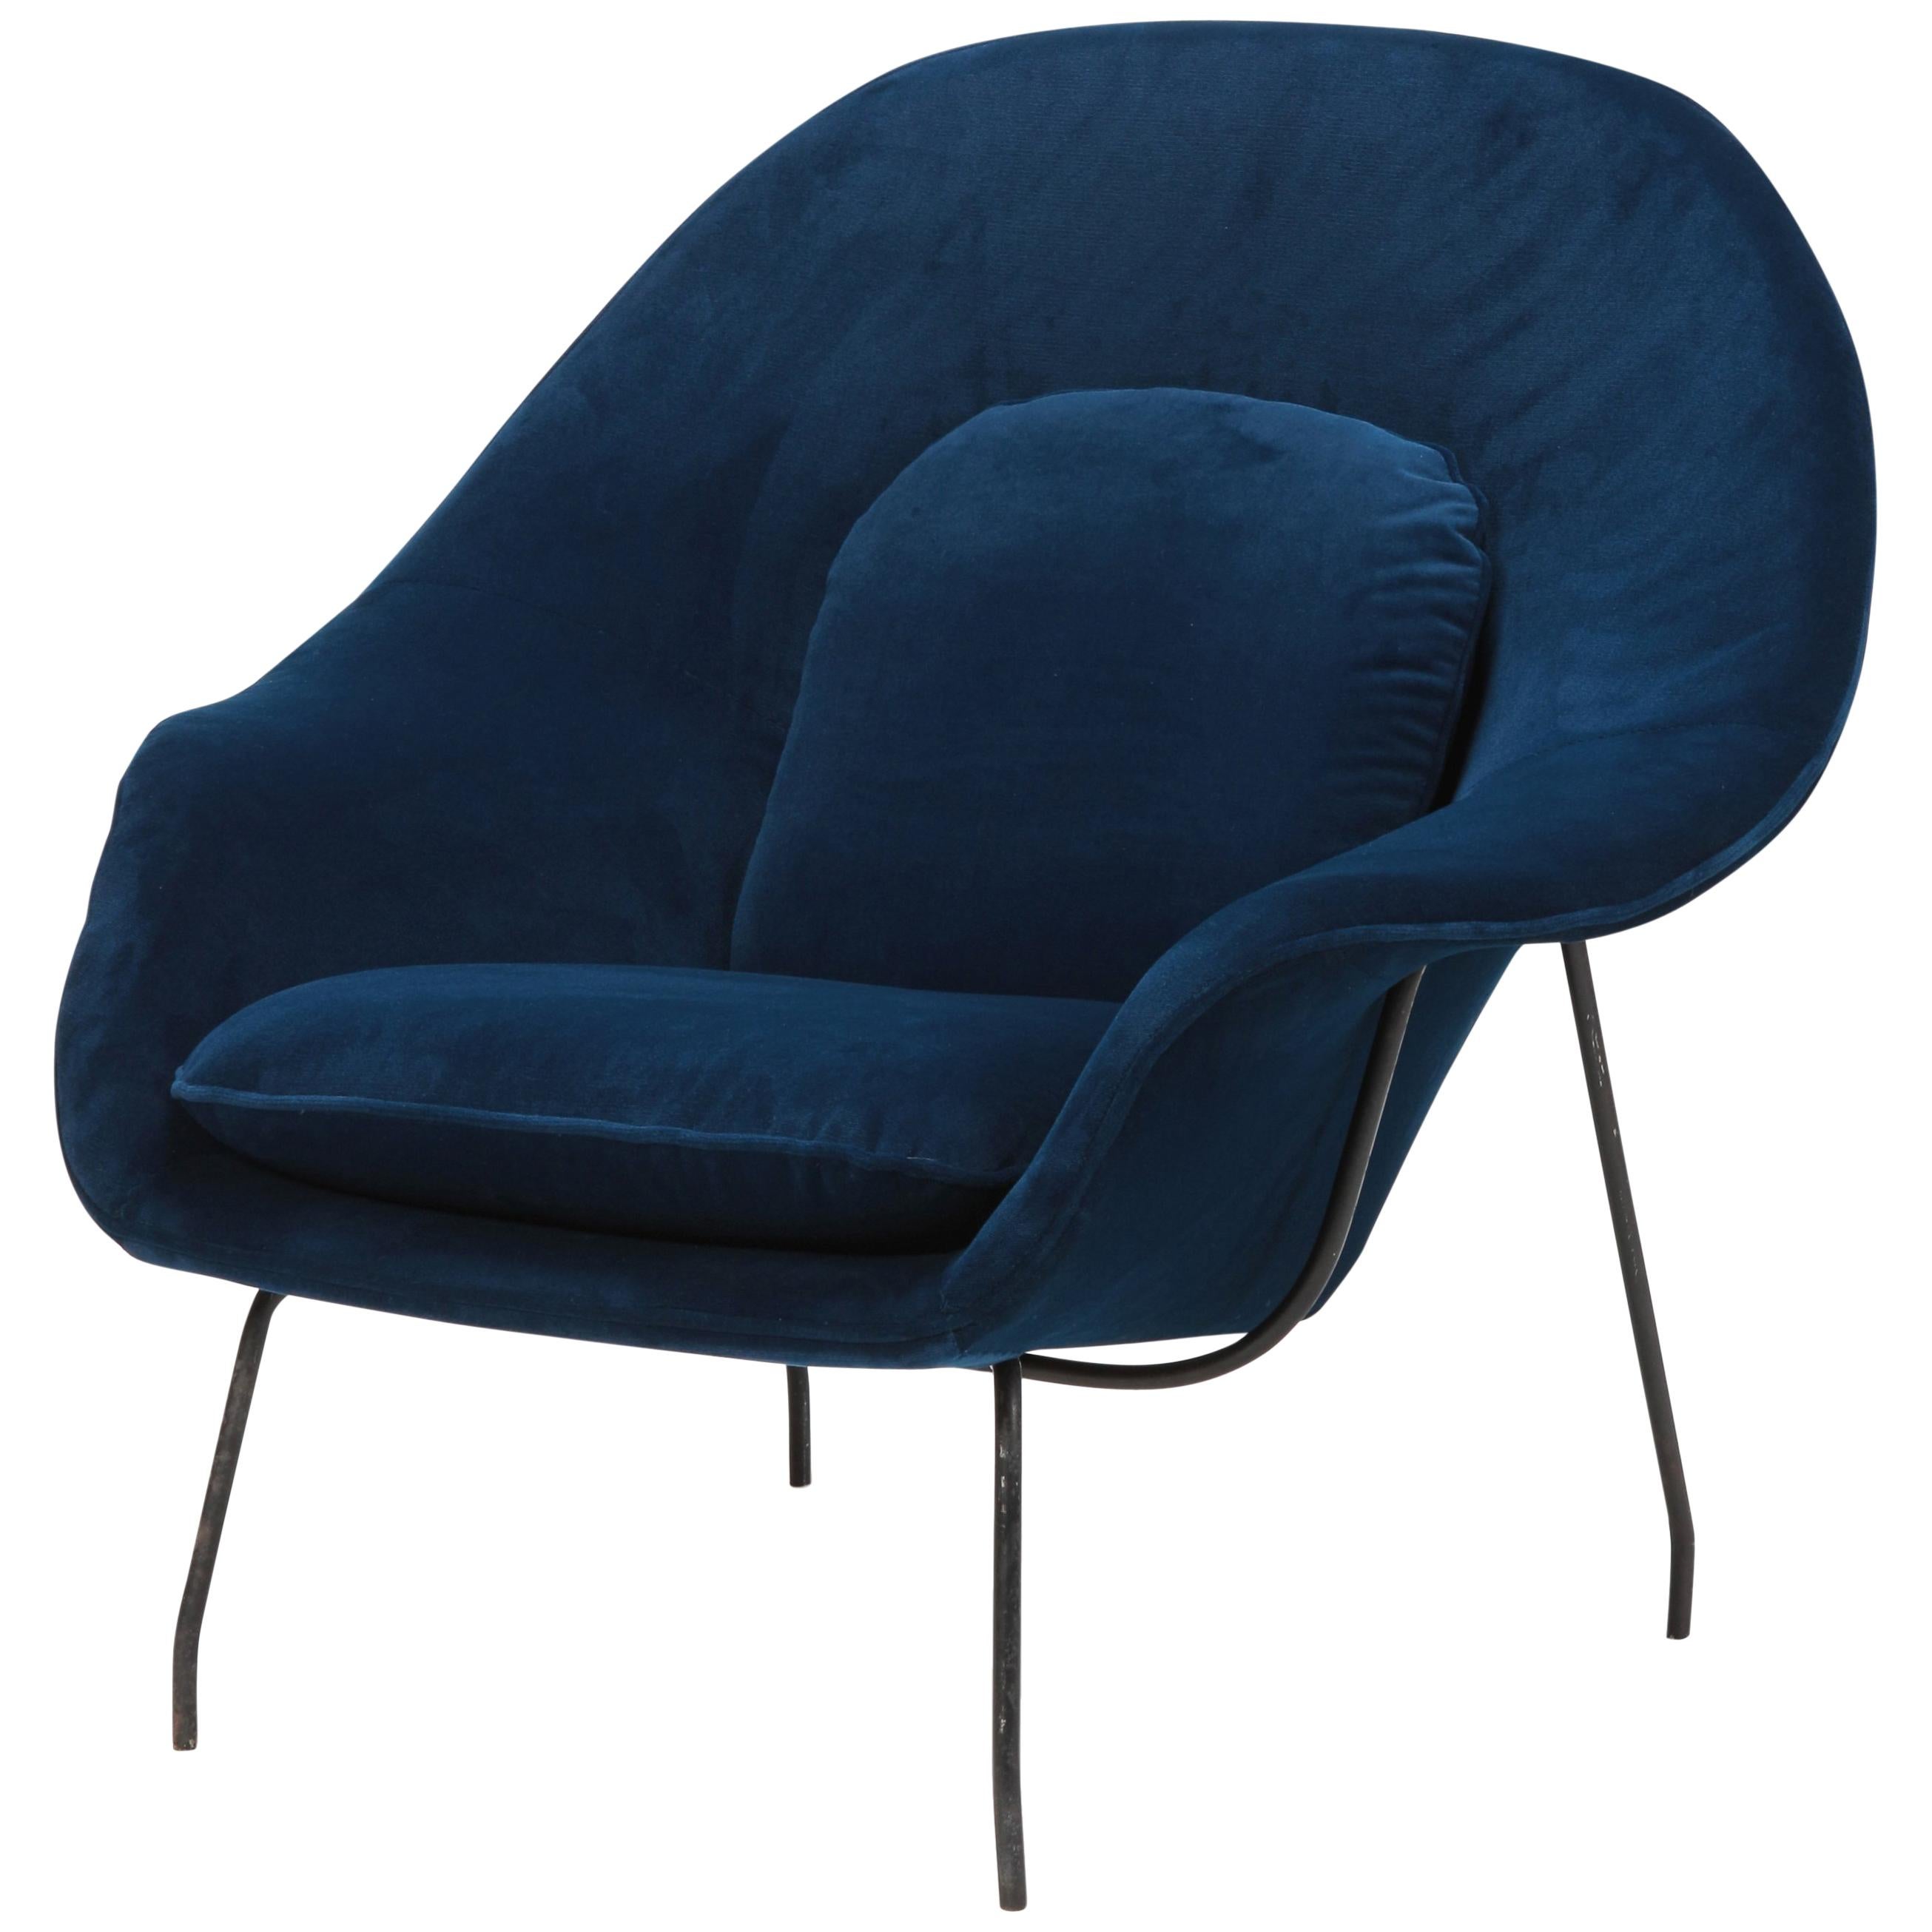 Eero Saarinen Womb Chair Knoll Int. 1950s